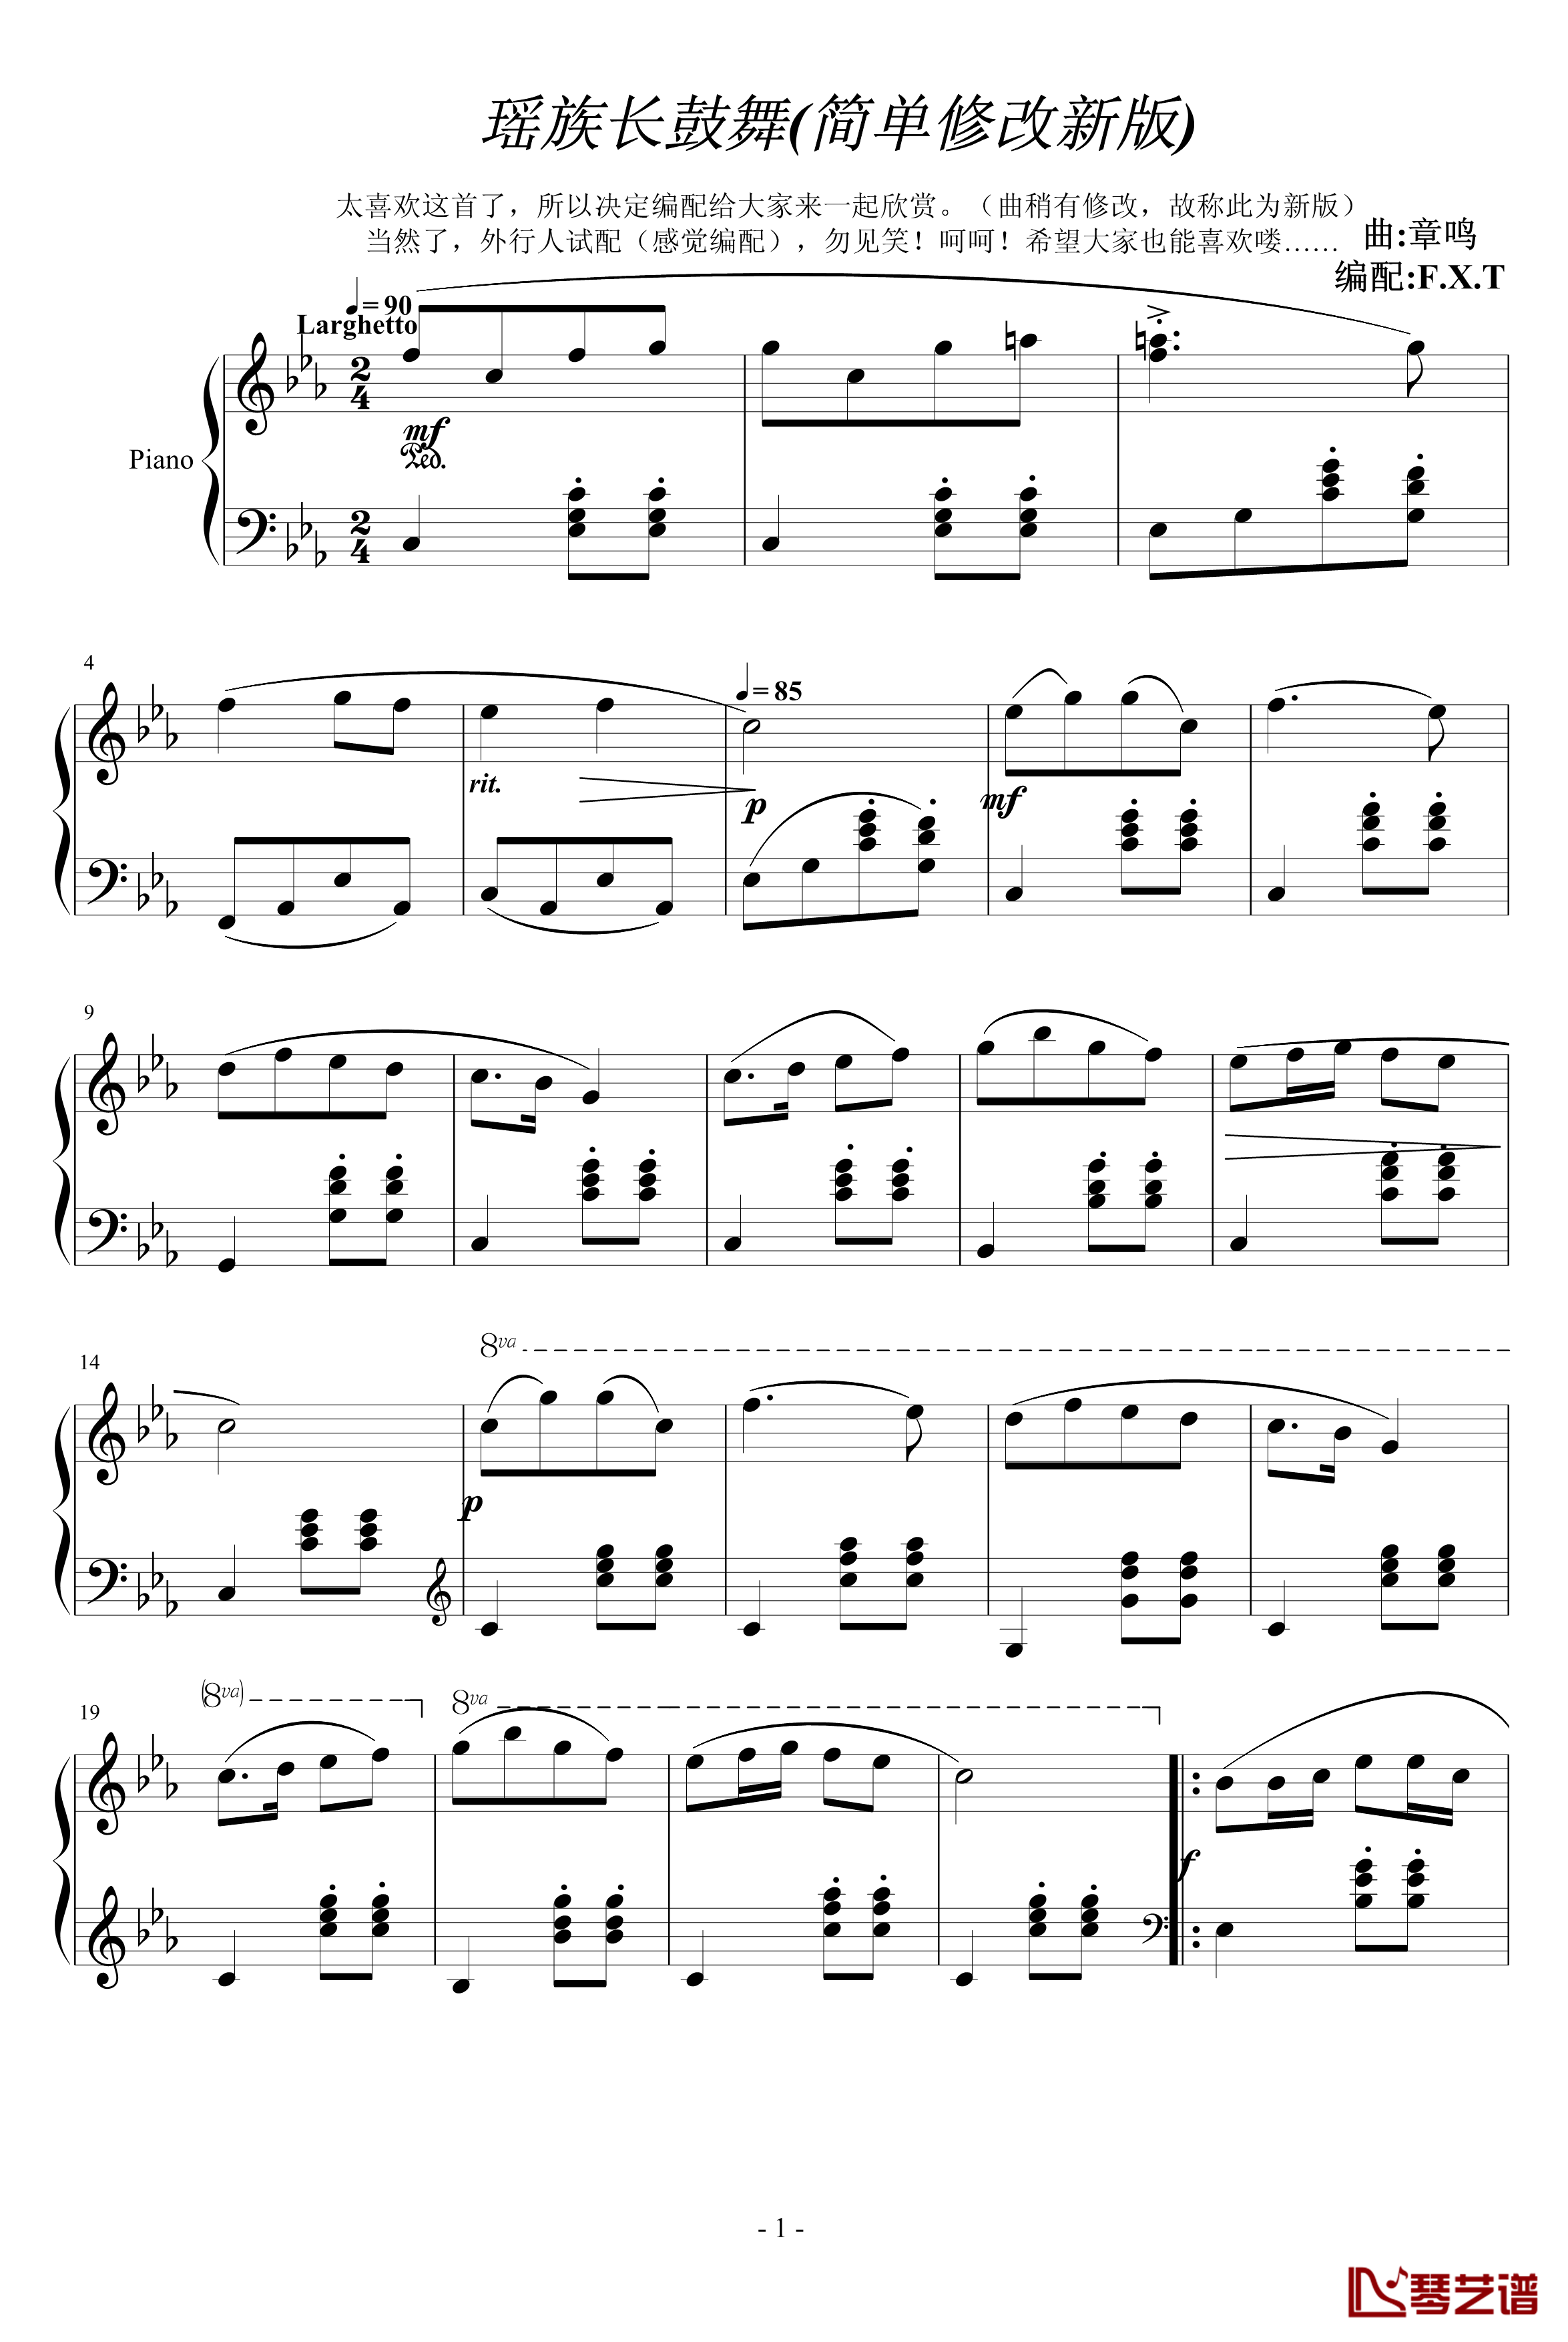 瑶族长鼓舞钢琴谱-简单修改新版-中国名曲1